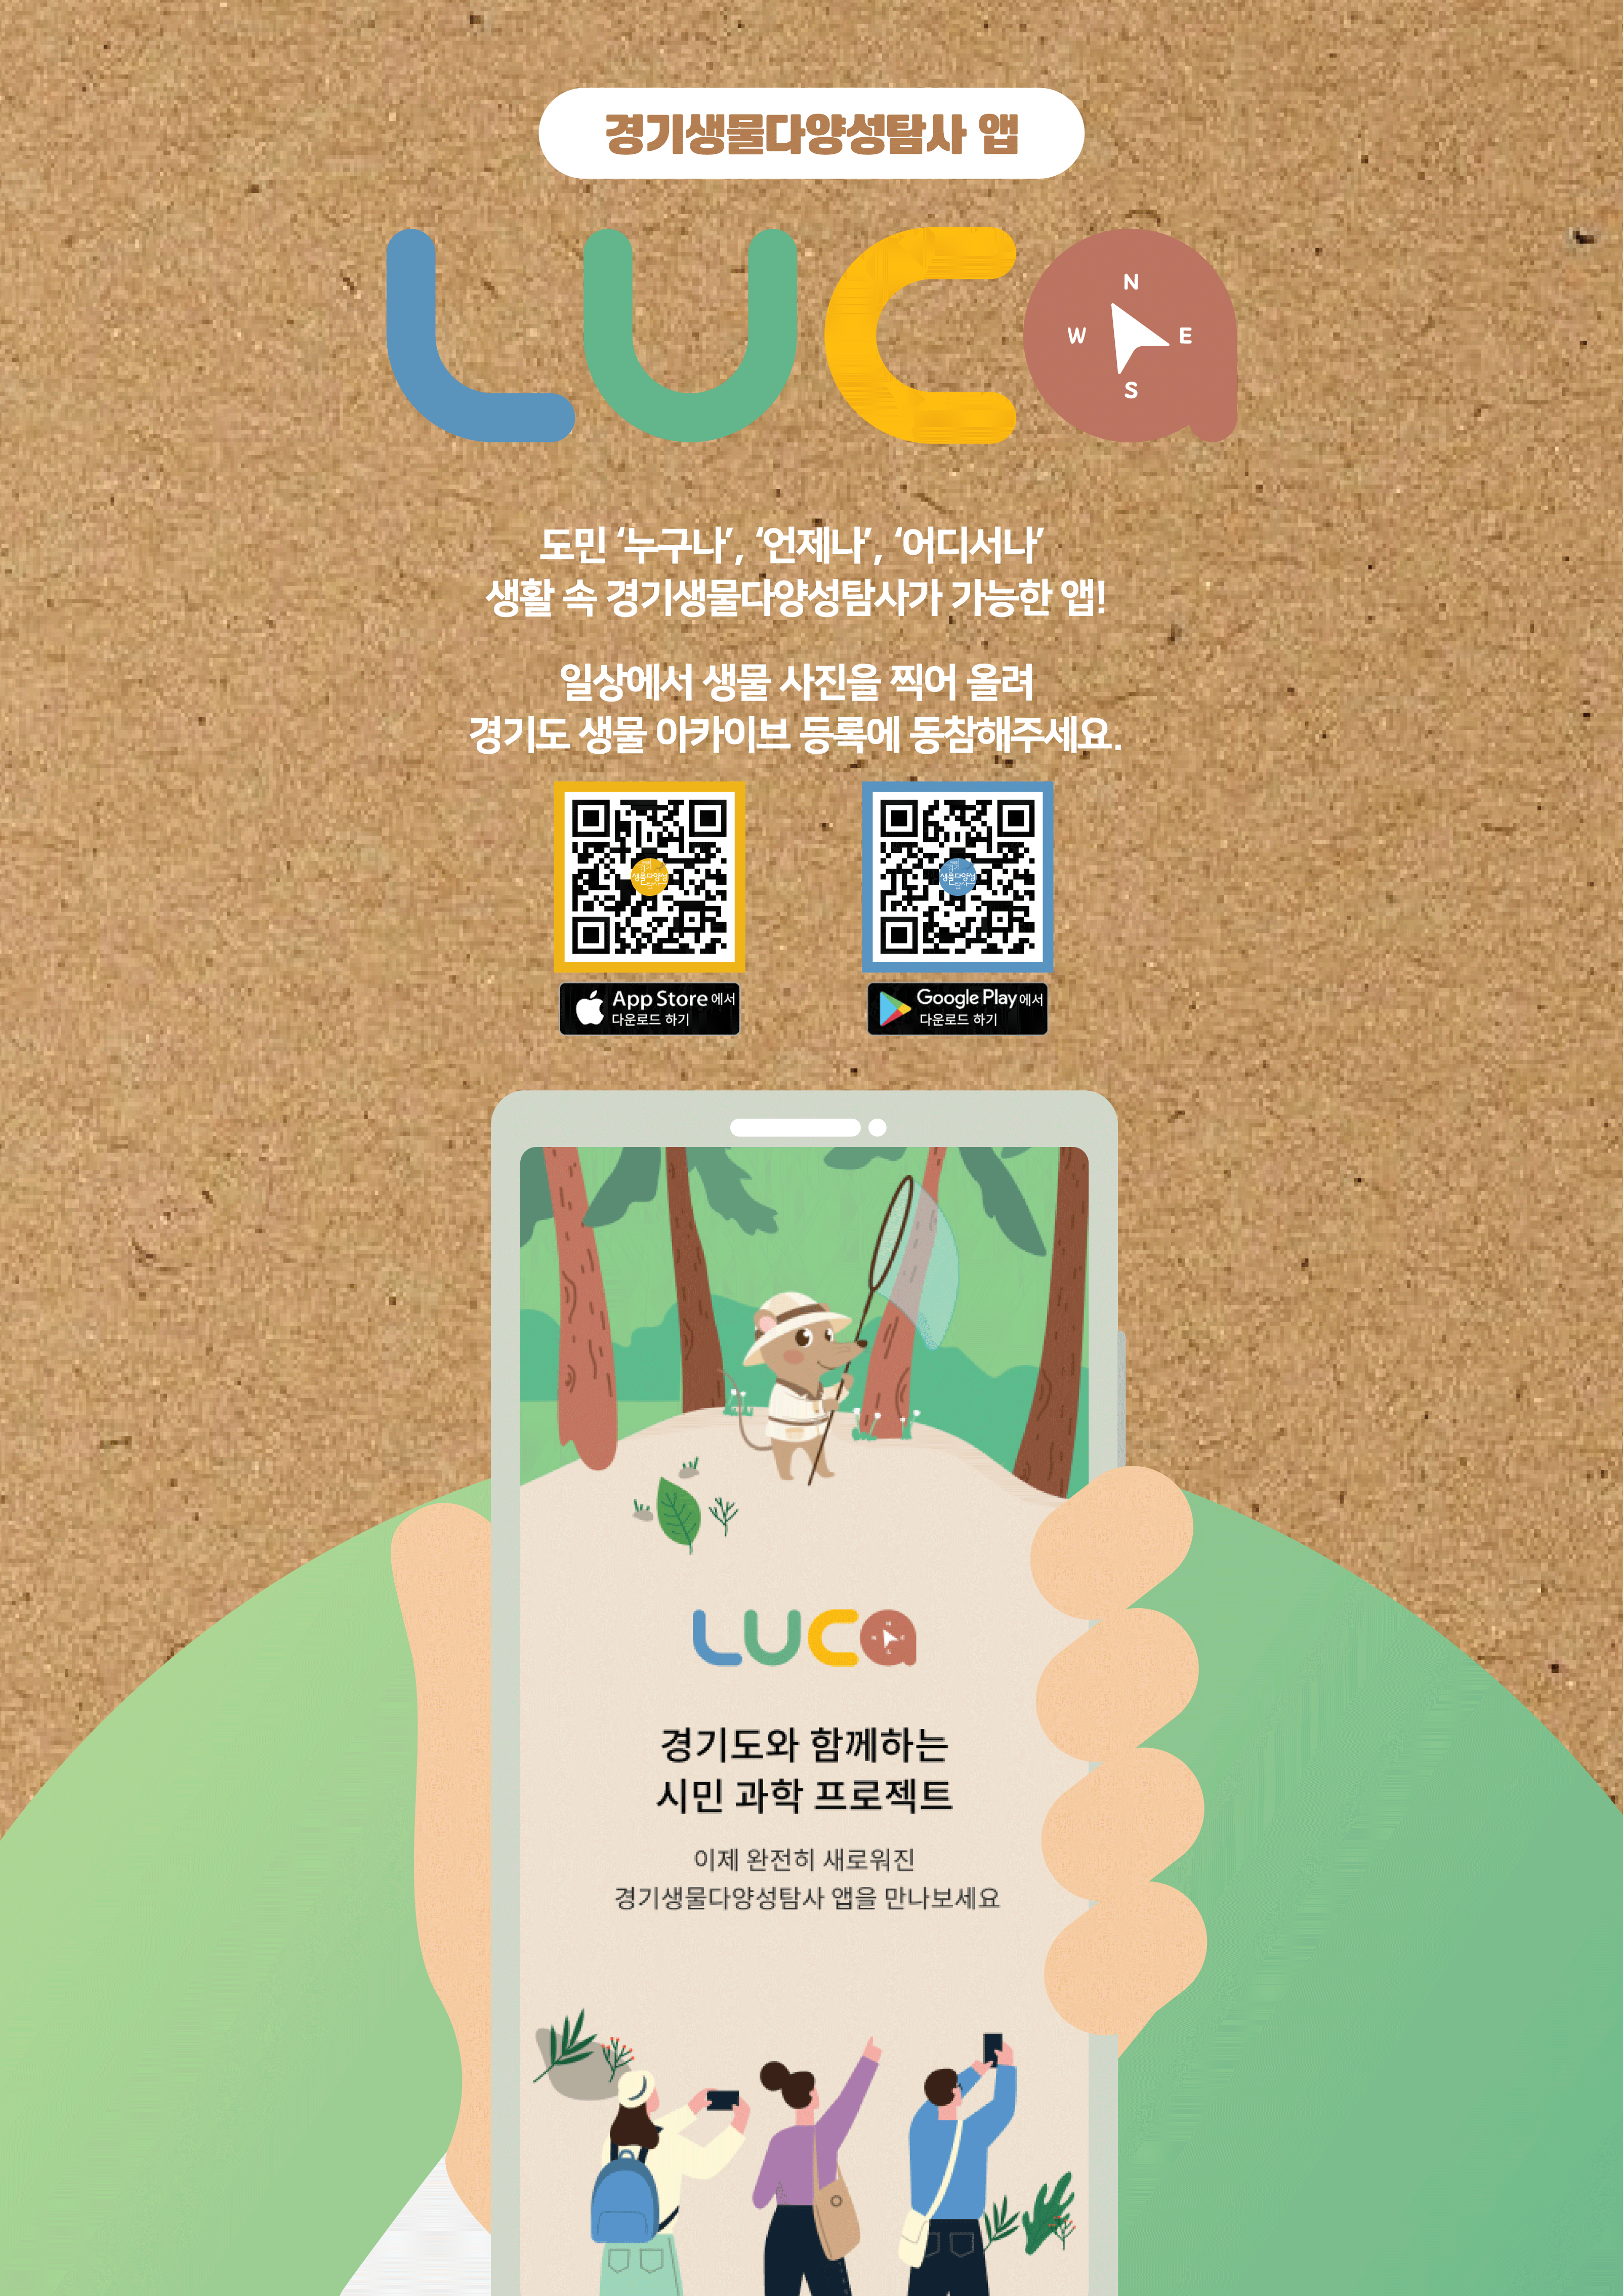 경기도, 생물 다양성 탐사 앱 루카 개발..."7월 1일부터 운영"